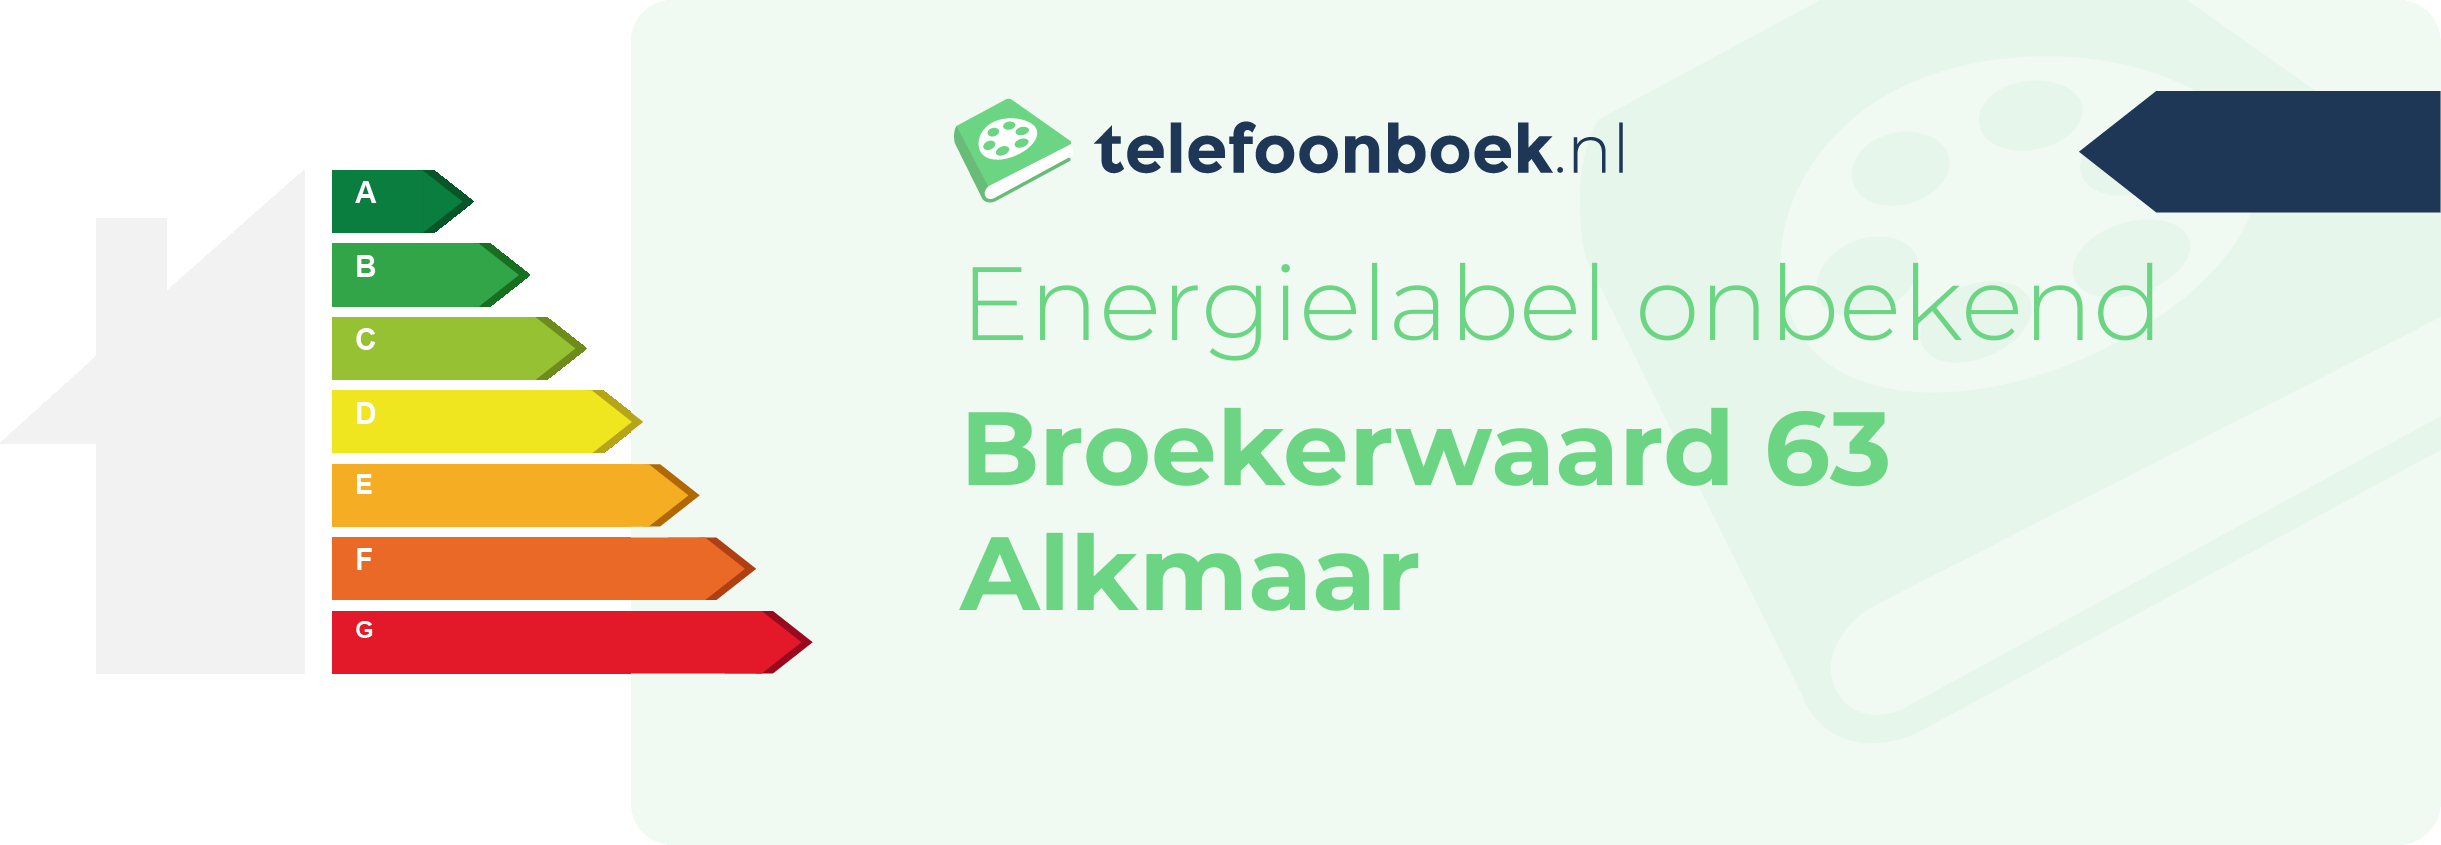 Energielabel Broekerwaard 63 Alkmaar